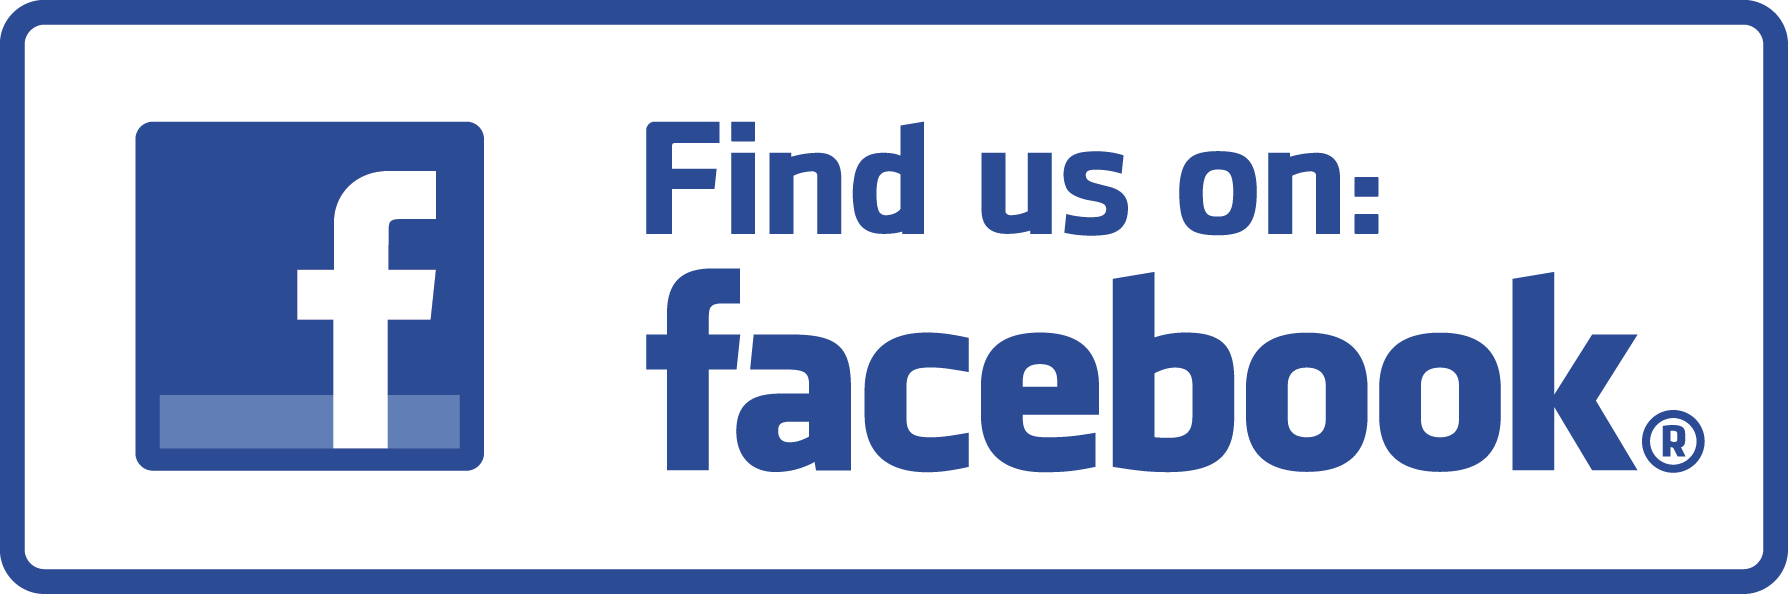 Find us on facebook!